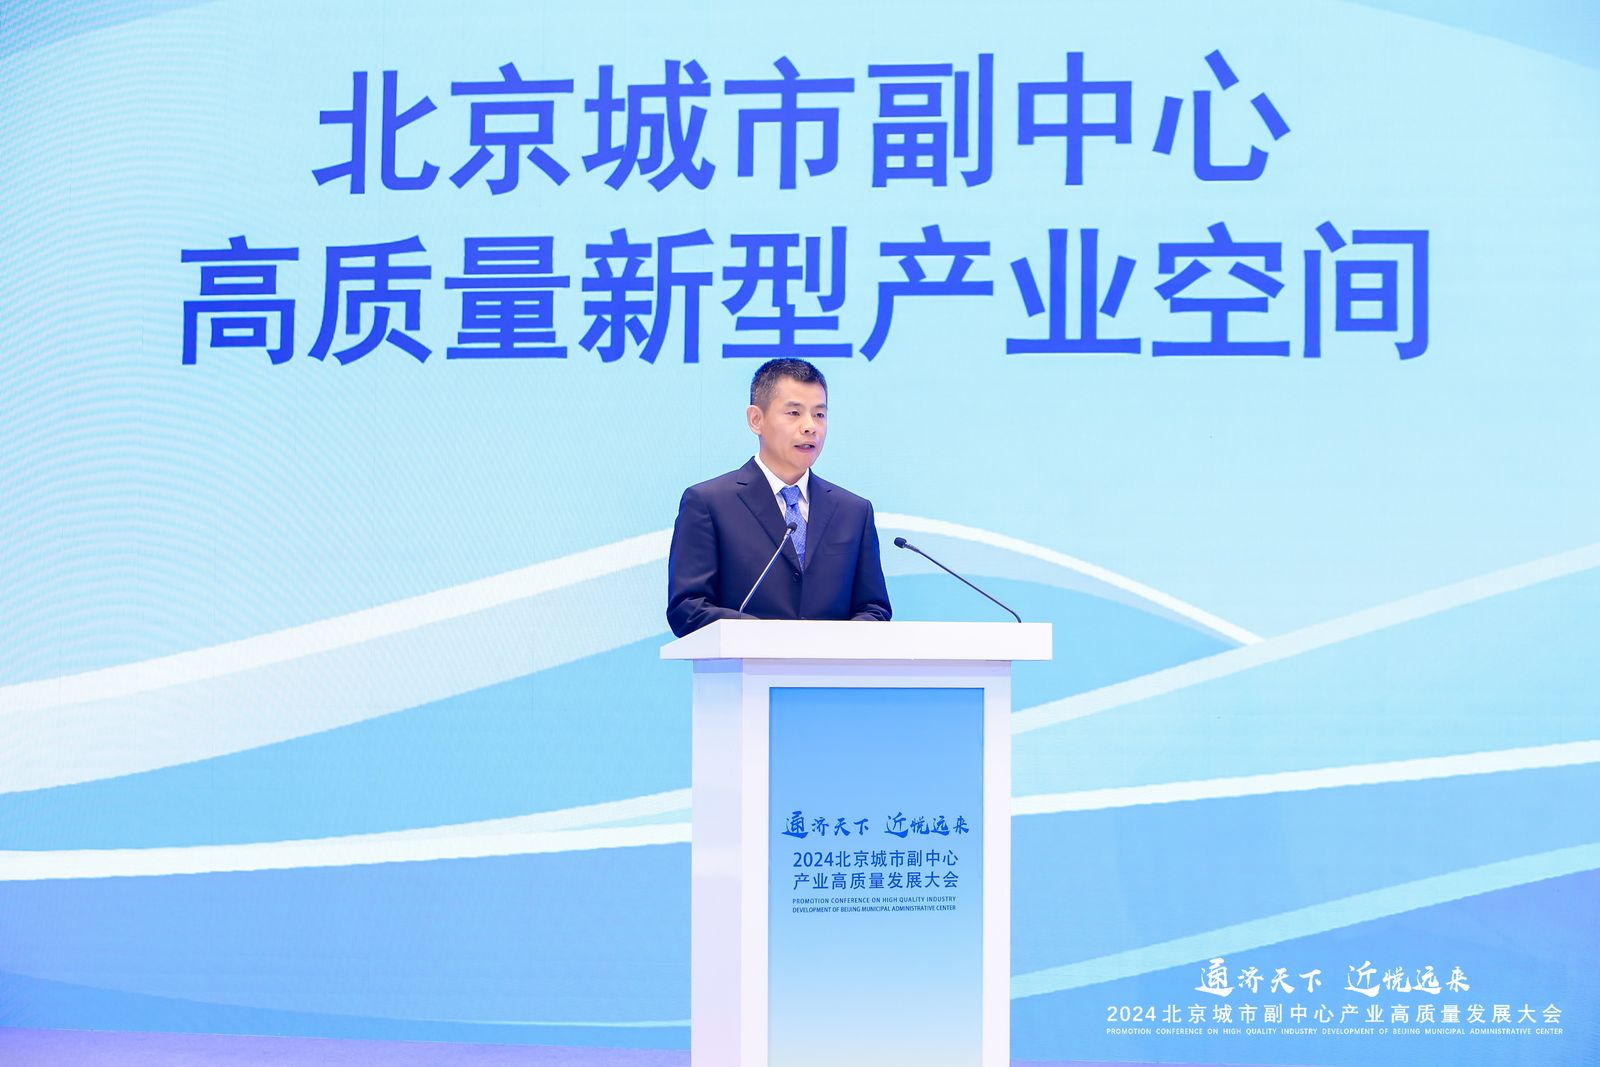  規劃引領促產業精準落地  北京城市副中心發佈「高質量新型產業空間」